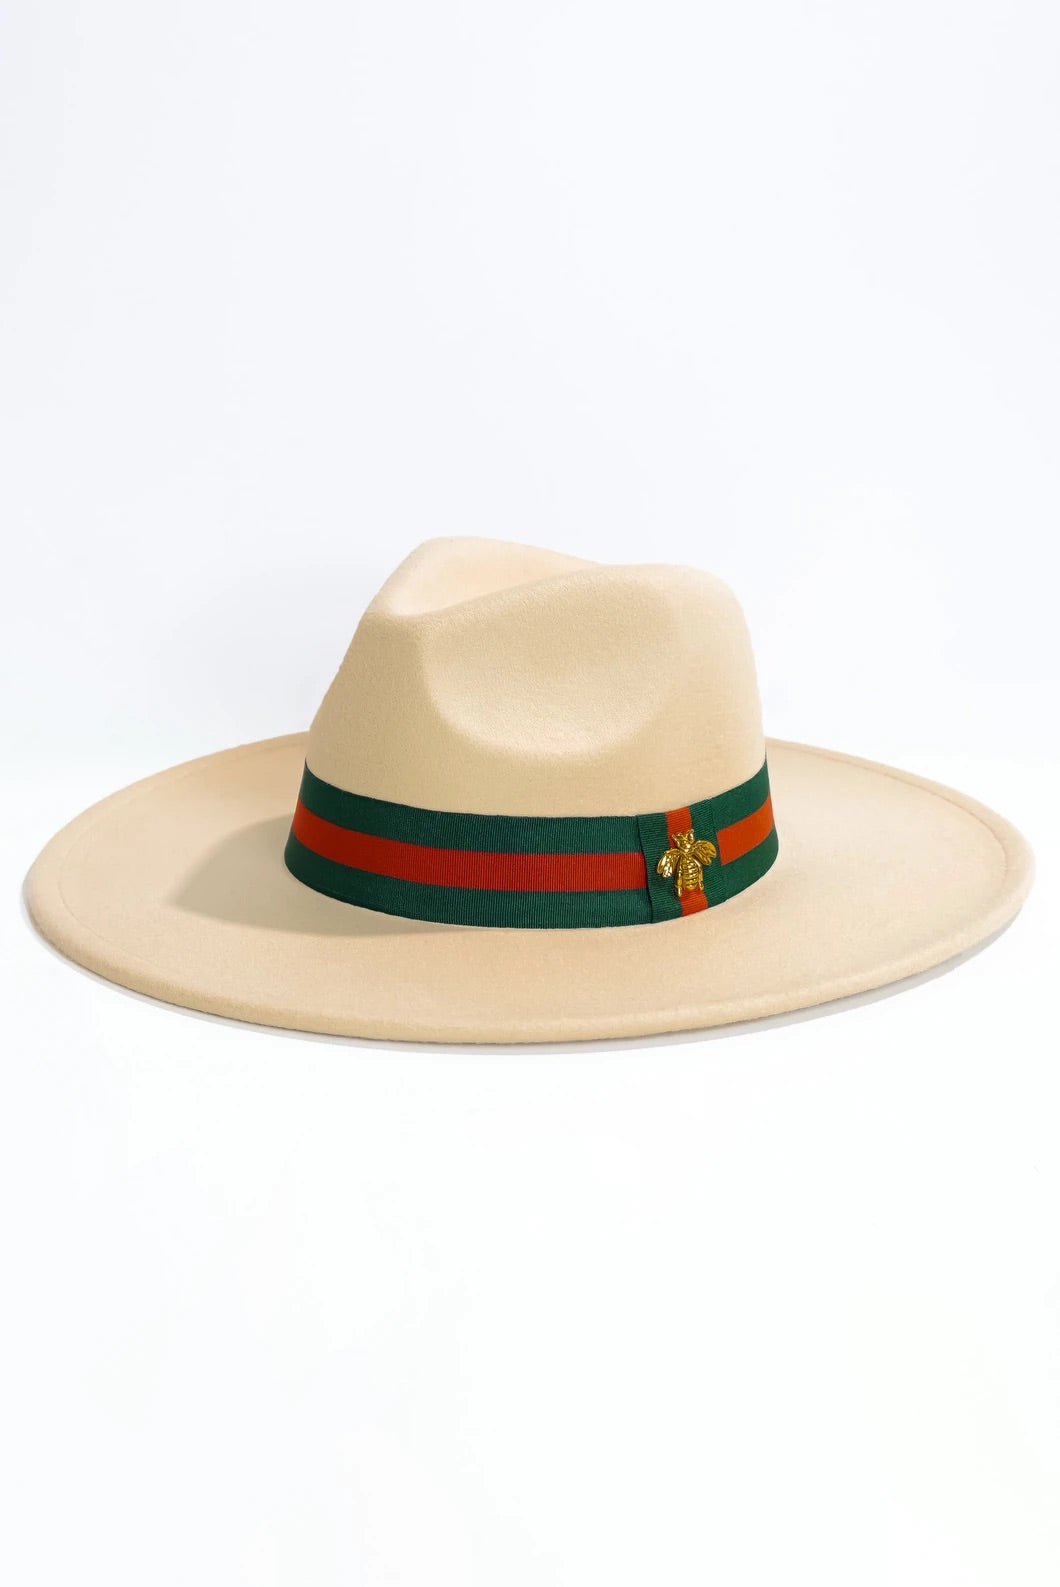 Nola Hats